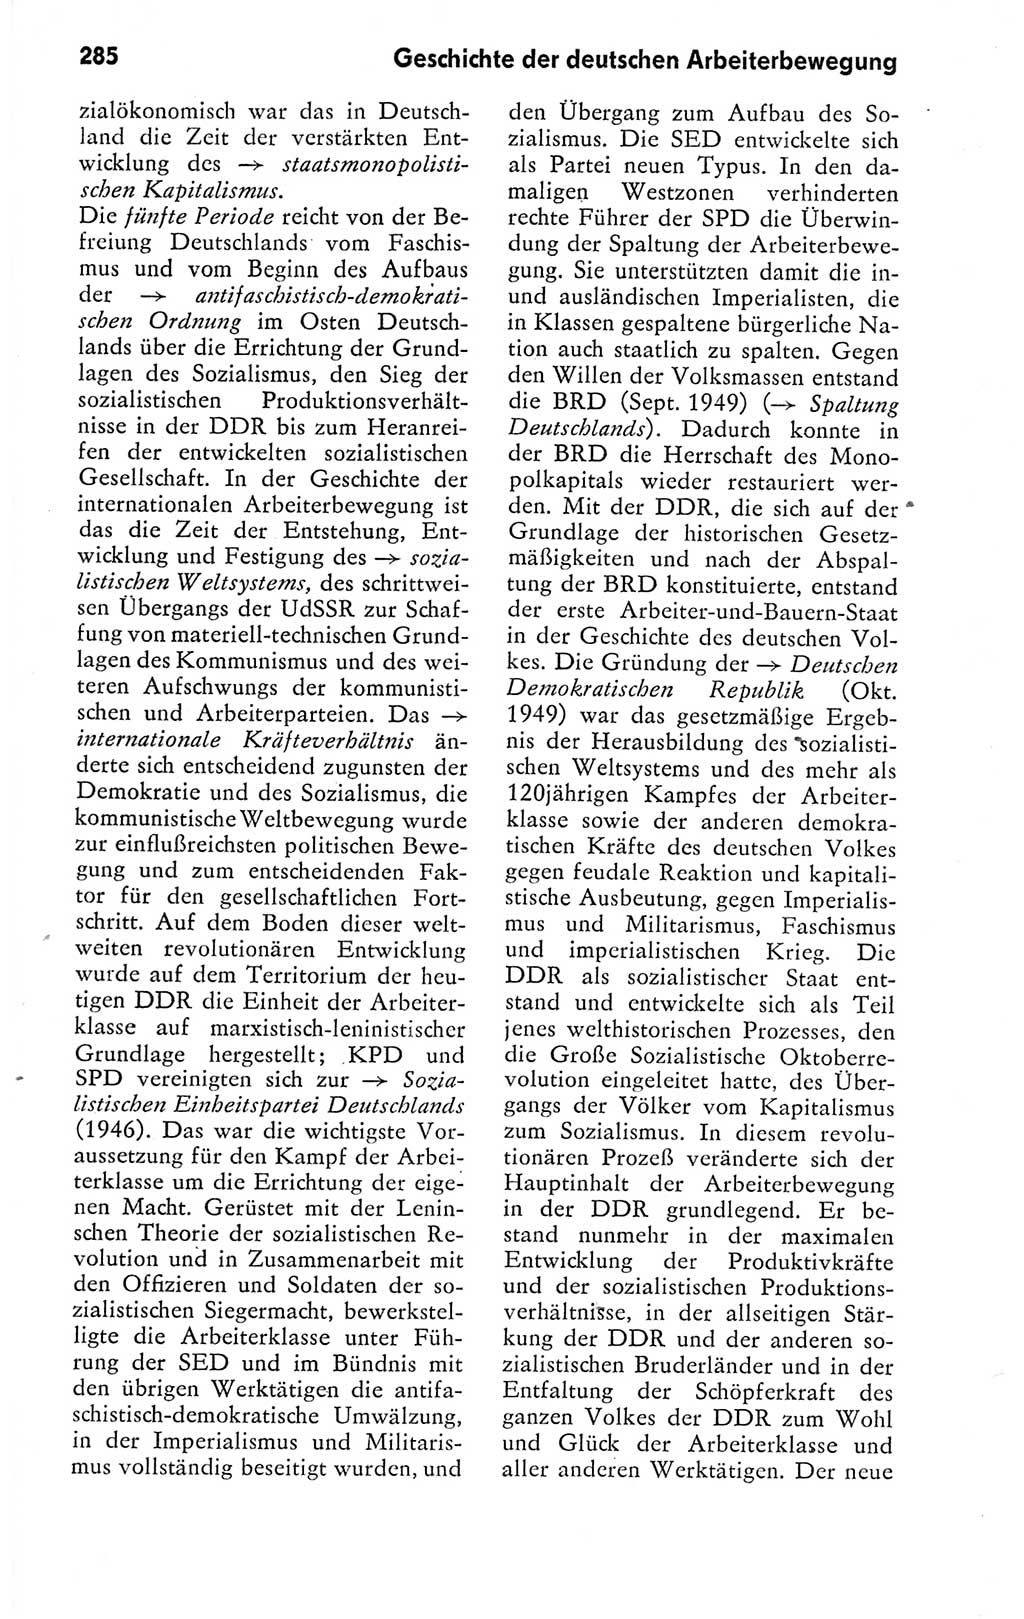 Kleines politisches Wörterbuch [Deutsche Demokratische Republik (DDR)] 1978, Seite 285 (Kl. pol. Wb. DDR 1978, S. 285)